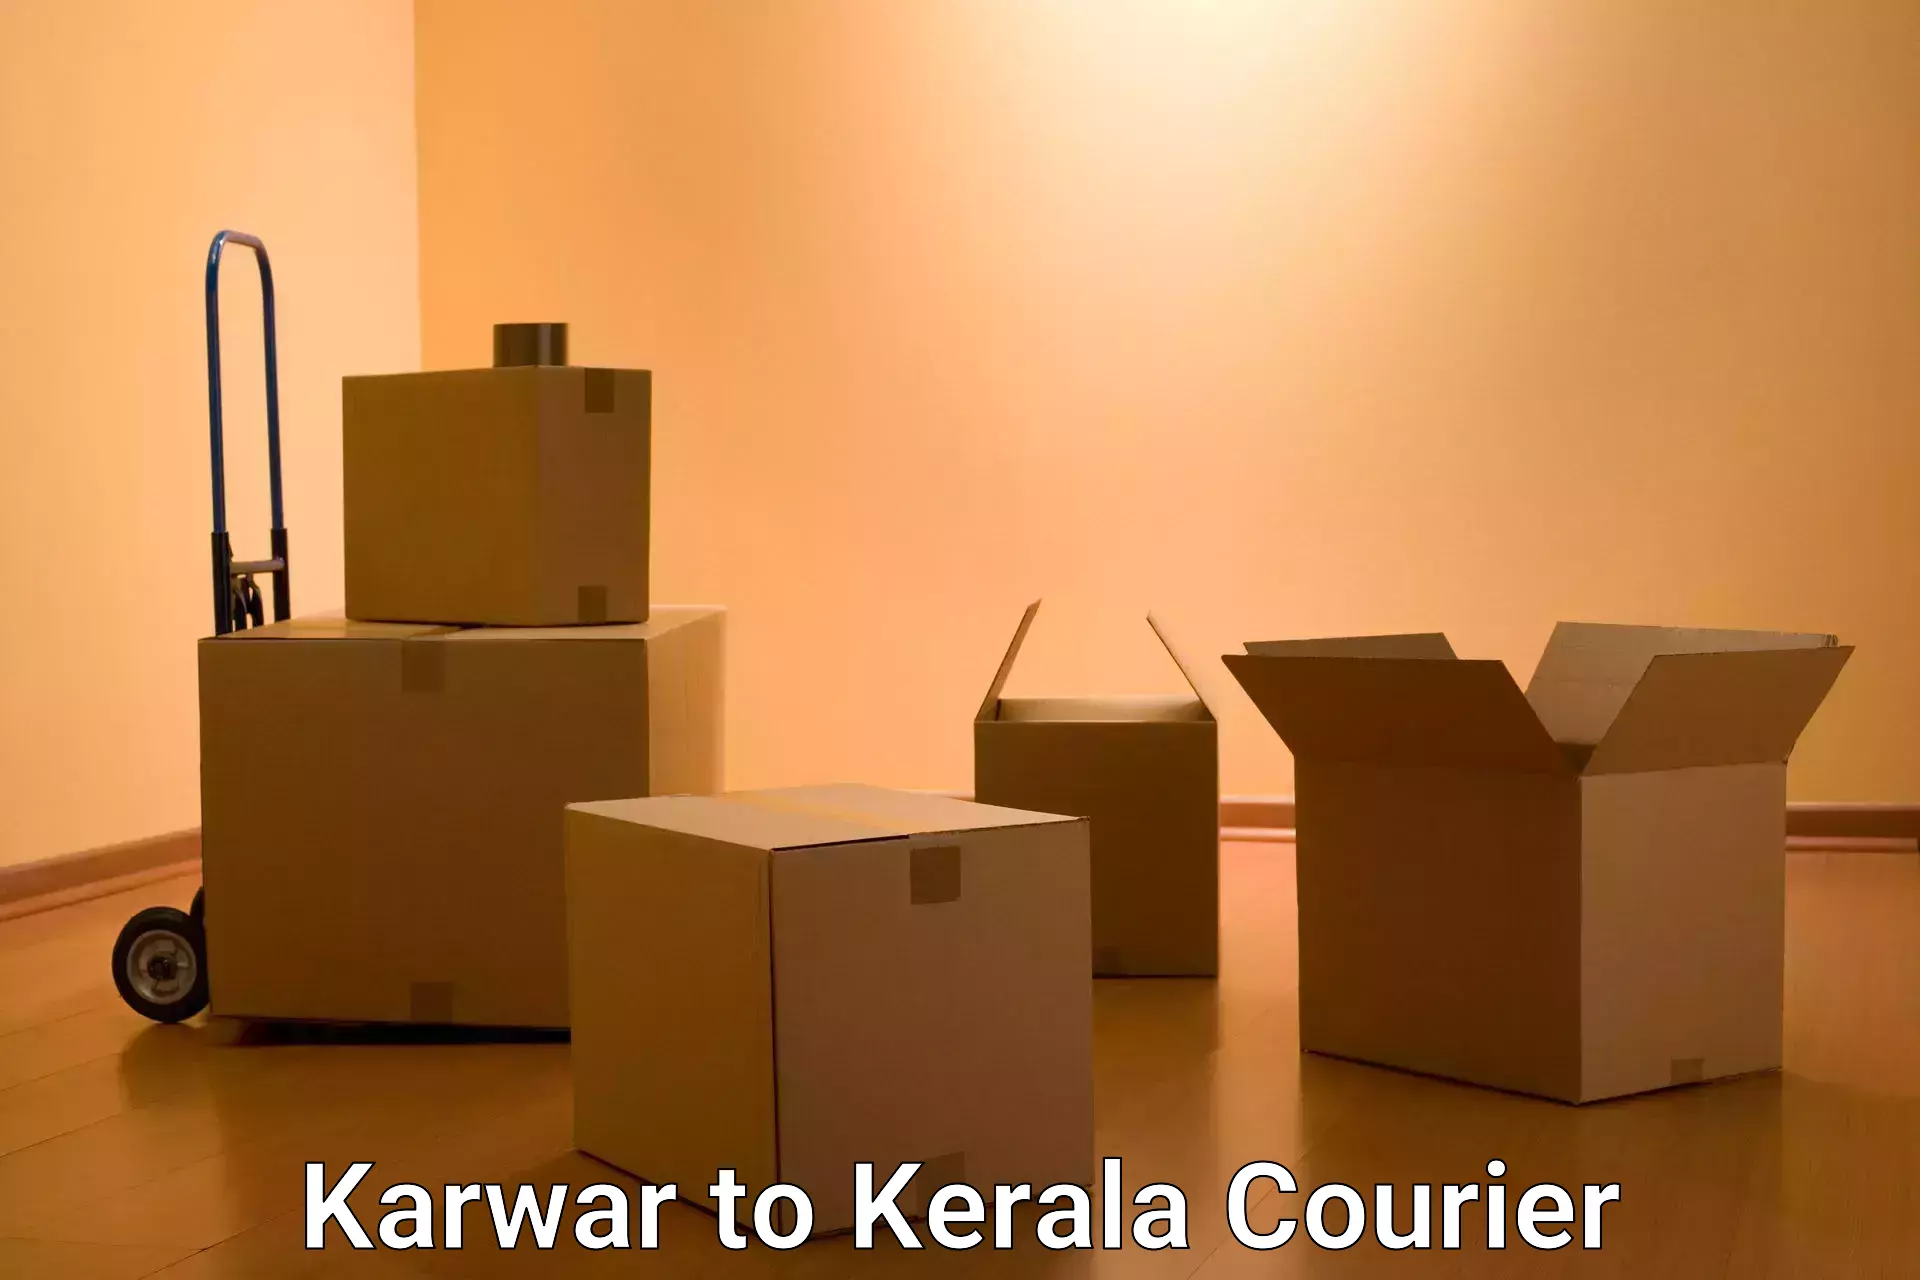 Express package handling Karwar to Kollam